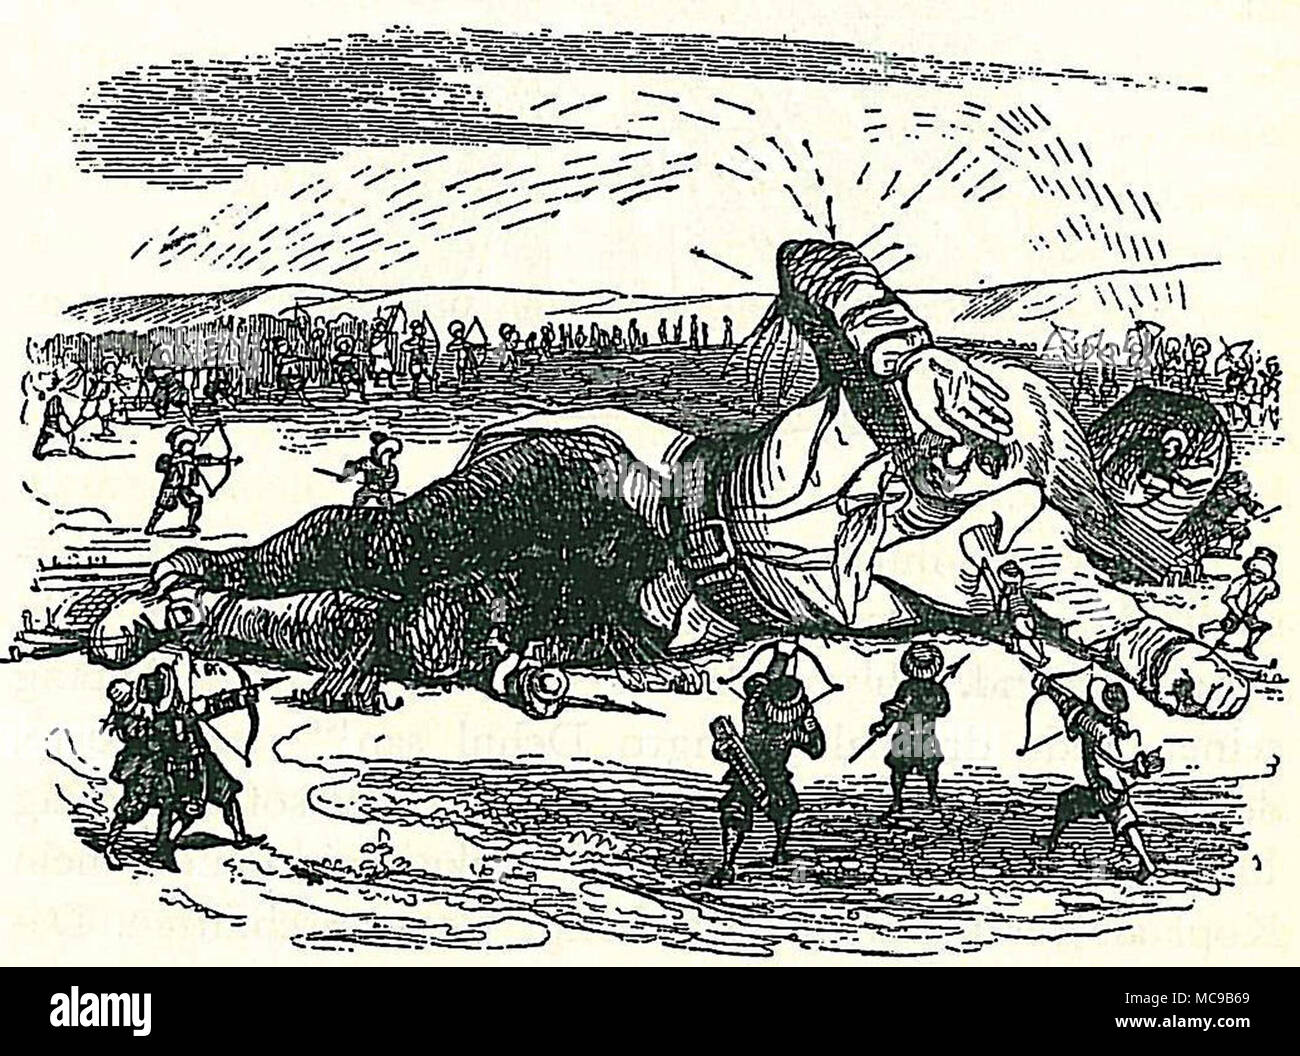 Gulliver capturés par les Lilliputiens, illustration du roman de Jonathan Swift Les Voyages de Gulliver par Grandville Banque D'Images